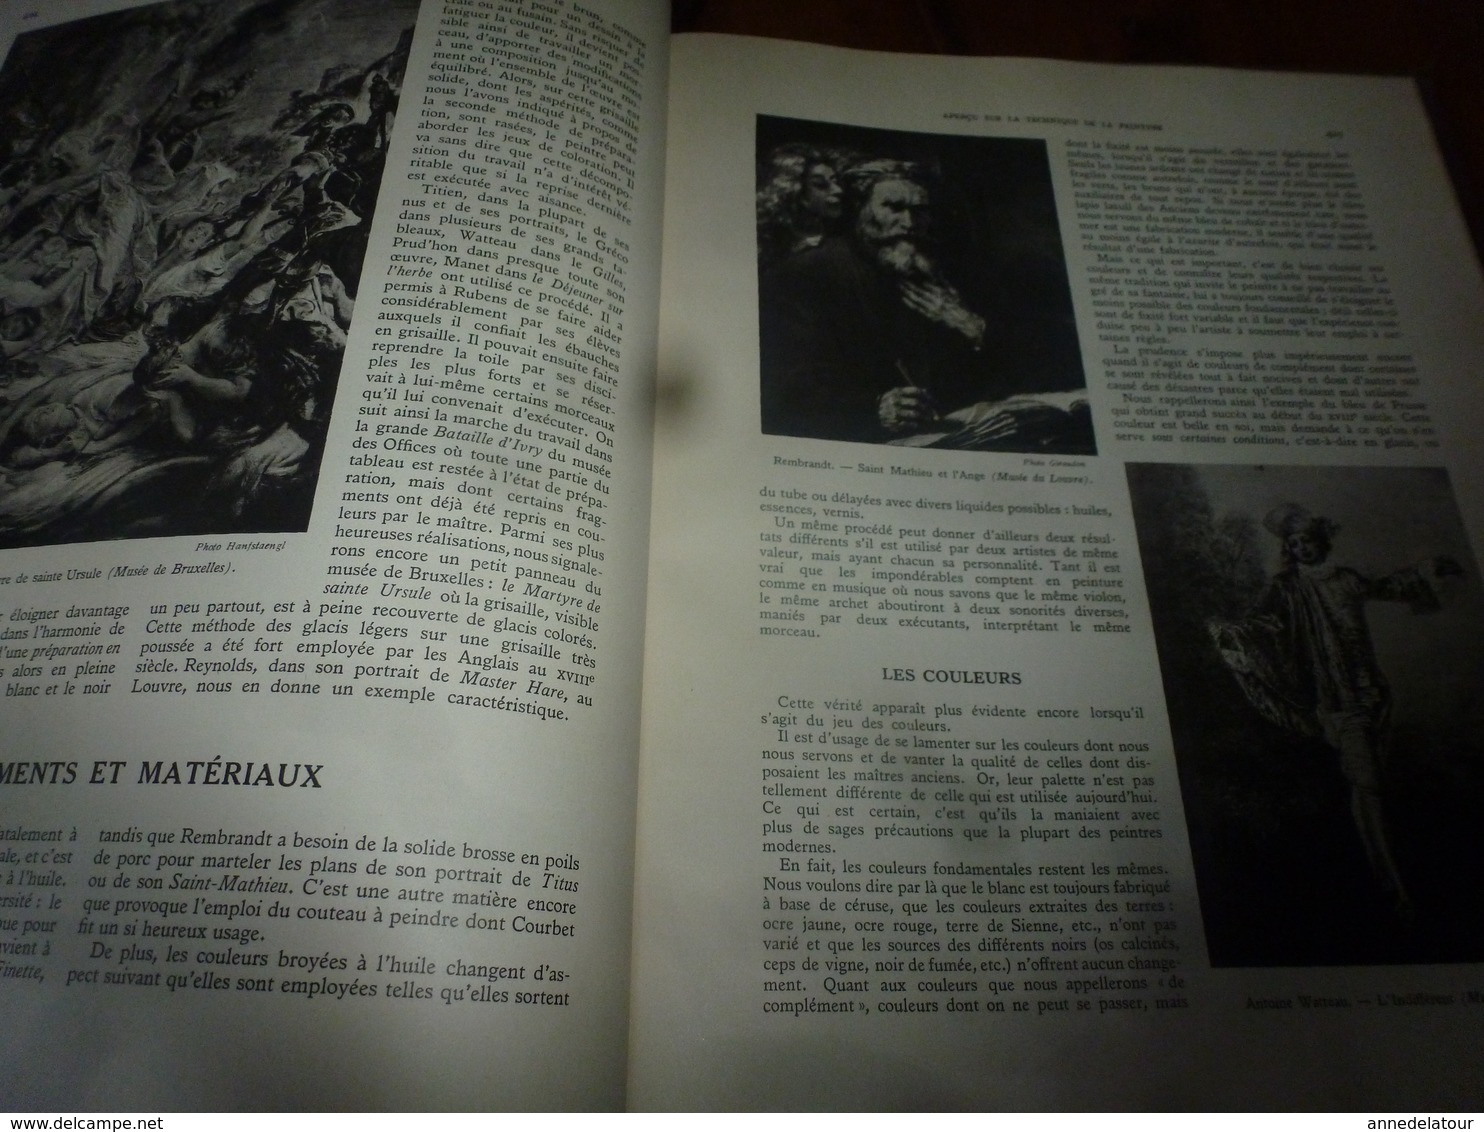 1938 IMPORTANT livre sur L'HISTOIRE de L'ART en Europe au 18ème siècle , tome 4 - nombreuses photos par Giraudon,etc